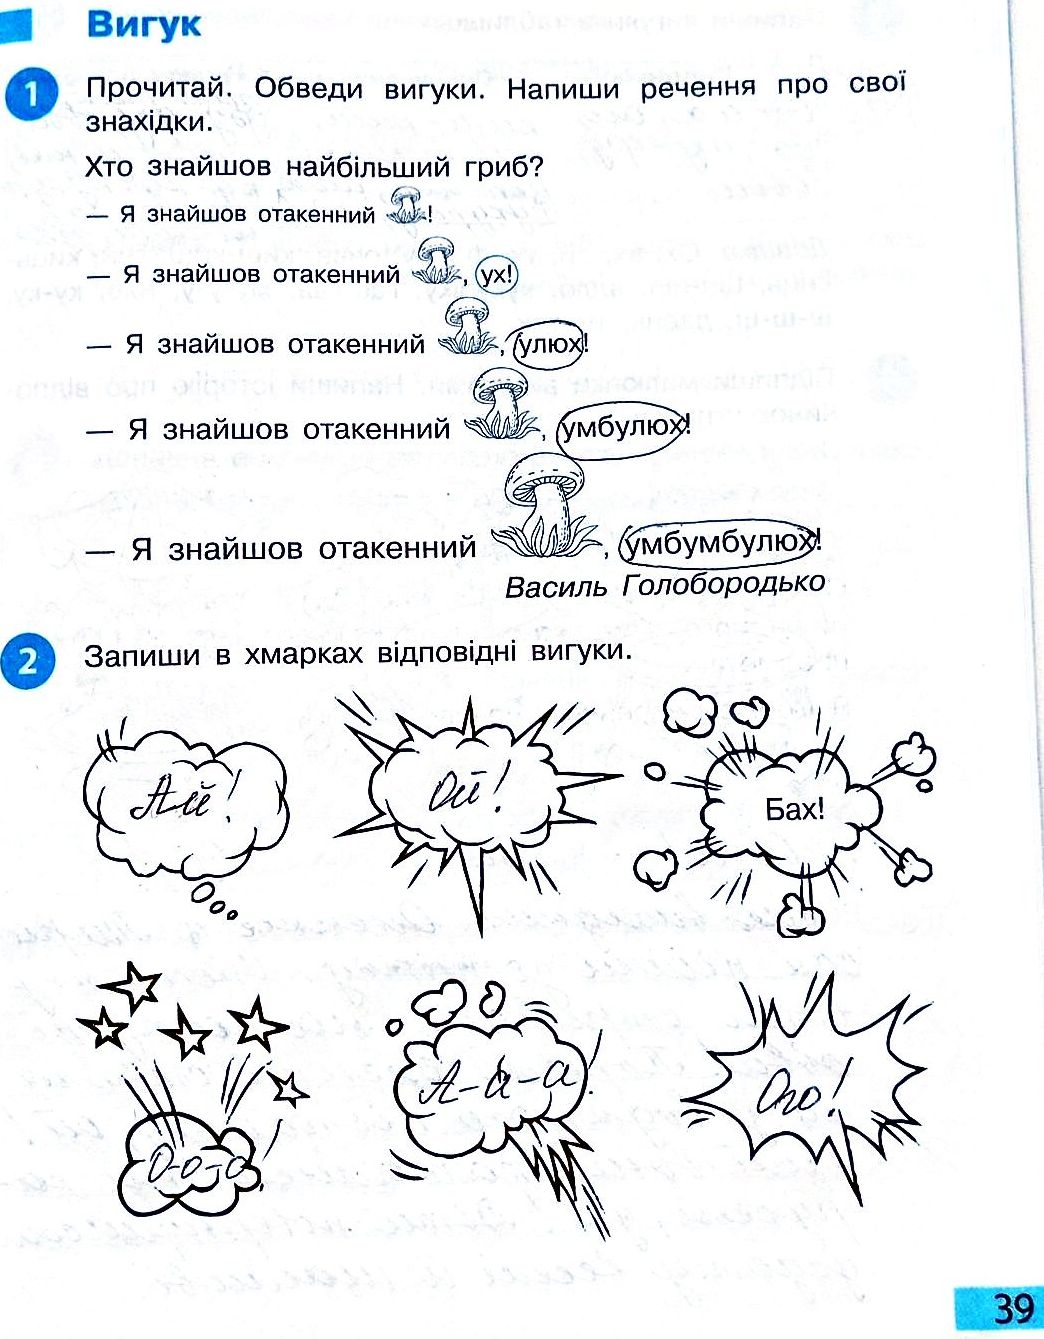 Сторінка 39 частина 2 гдз 3 клас робочий зошит українська мова Большакова